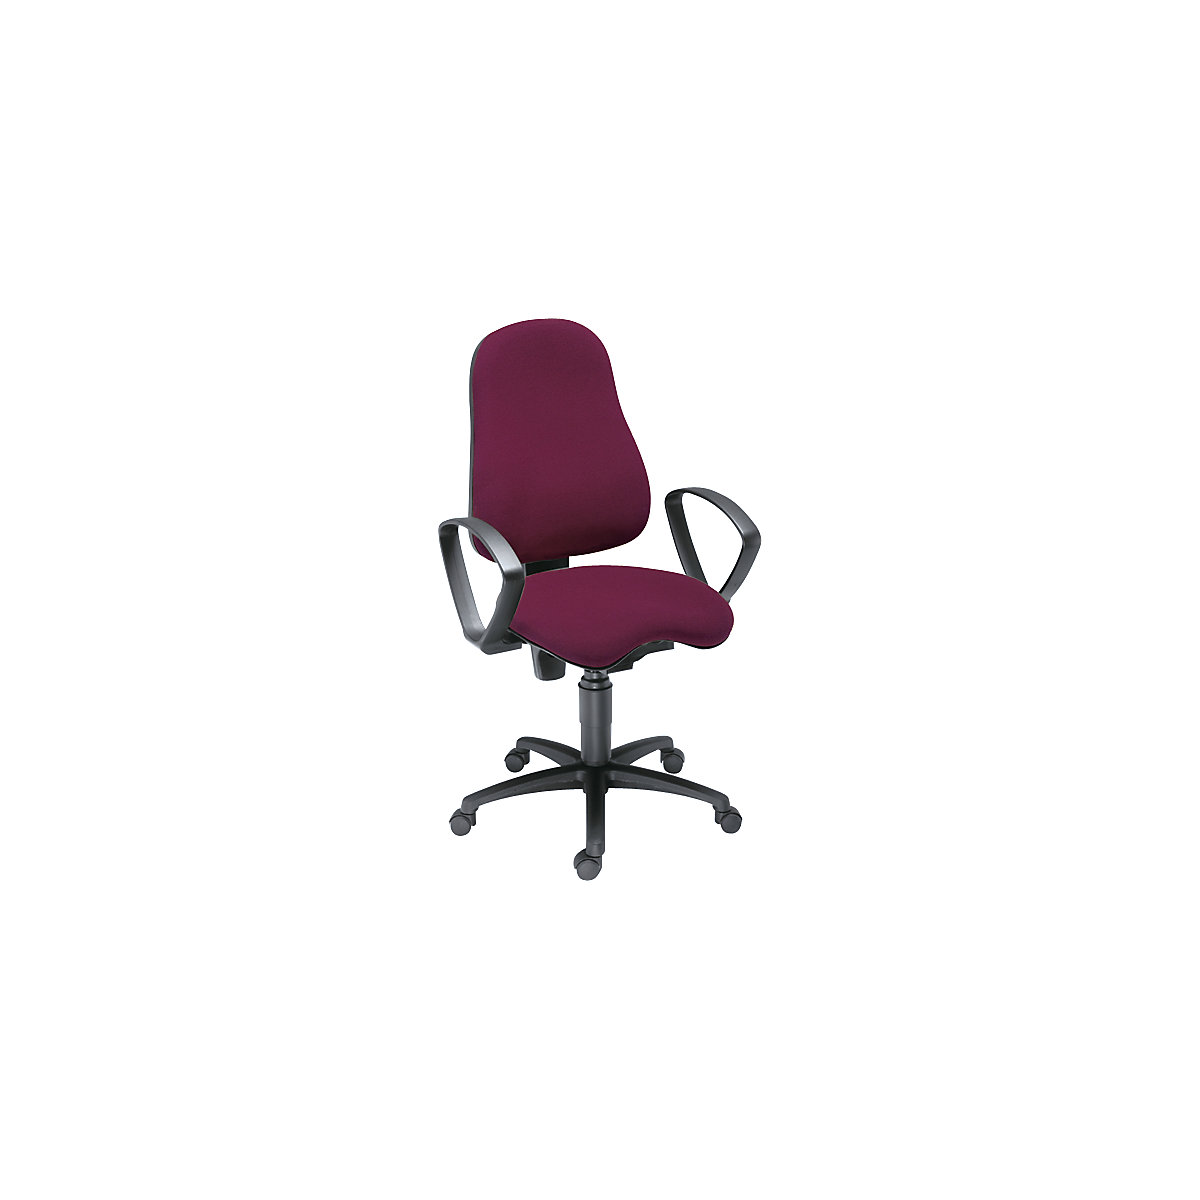 Udobna okretna stolica BALANCE 400 – Topstar, sa zglobom sjedala Body Balance Tec® i naslonima za ruke, presvlaka u bordo boji-3